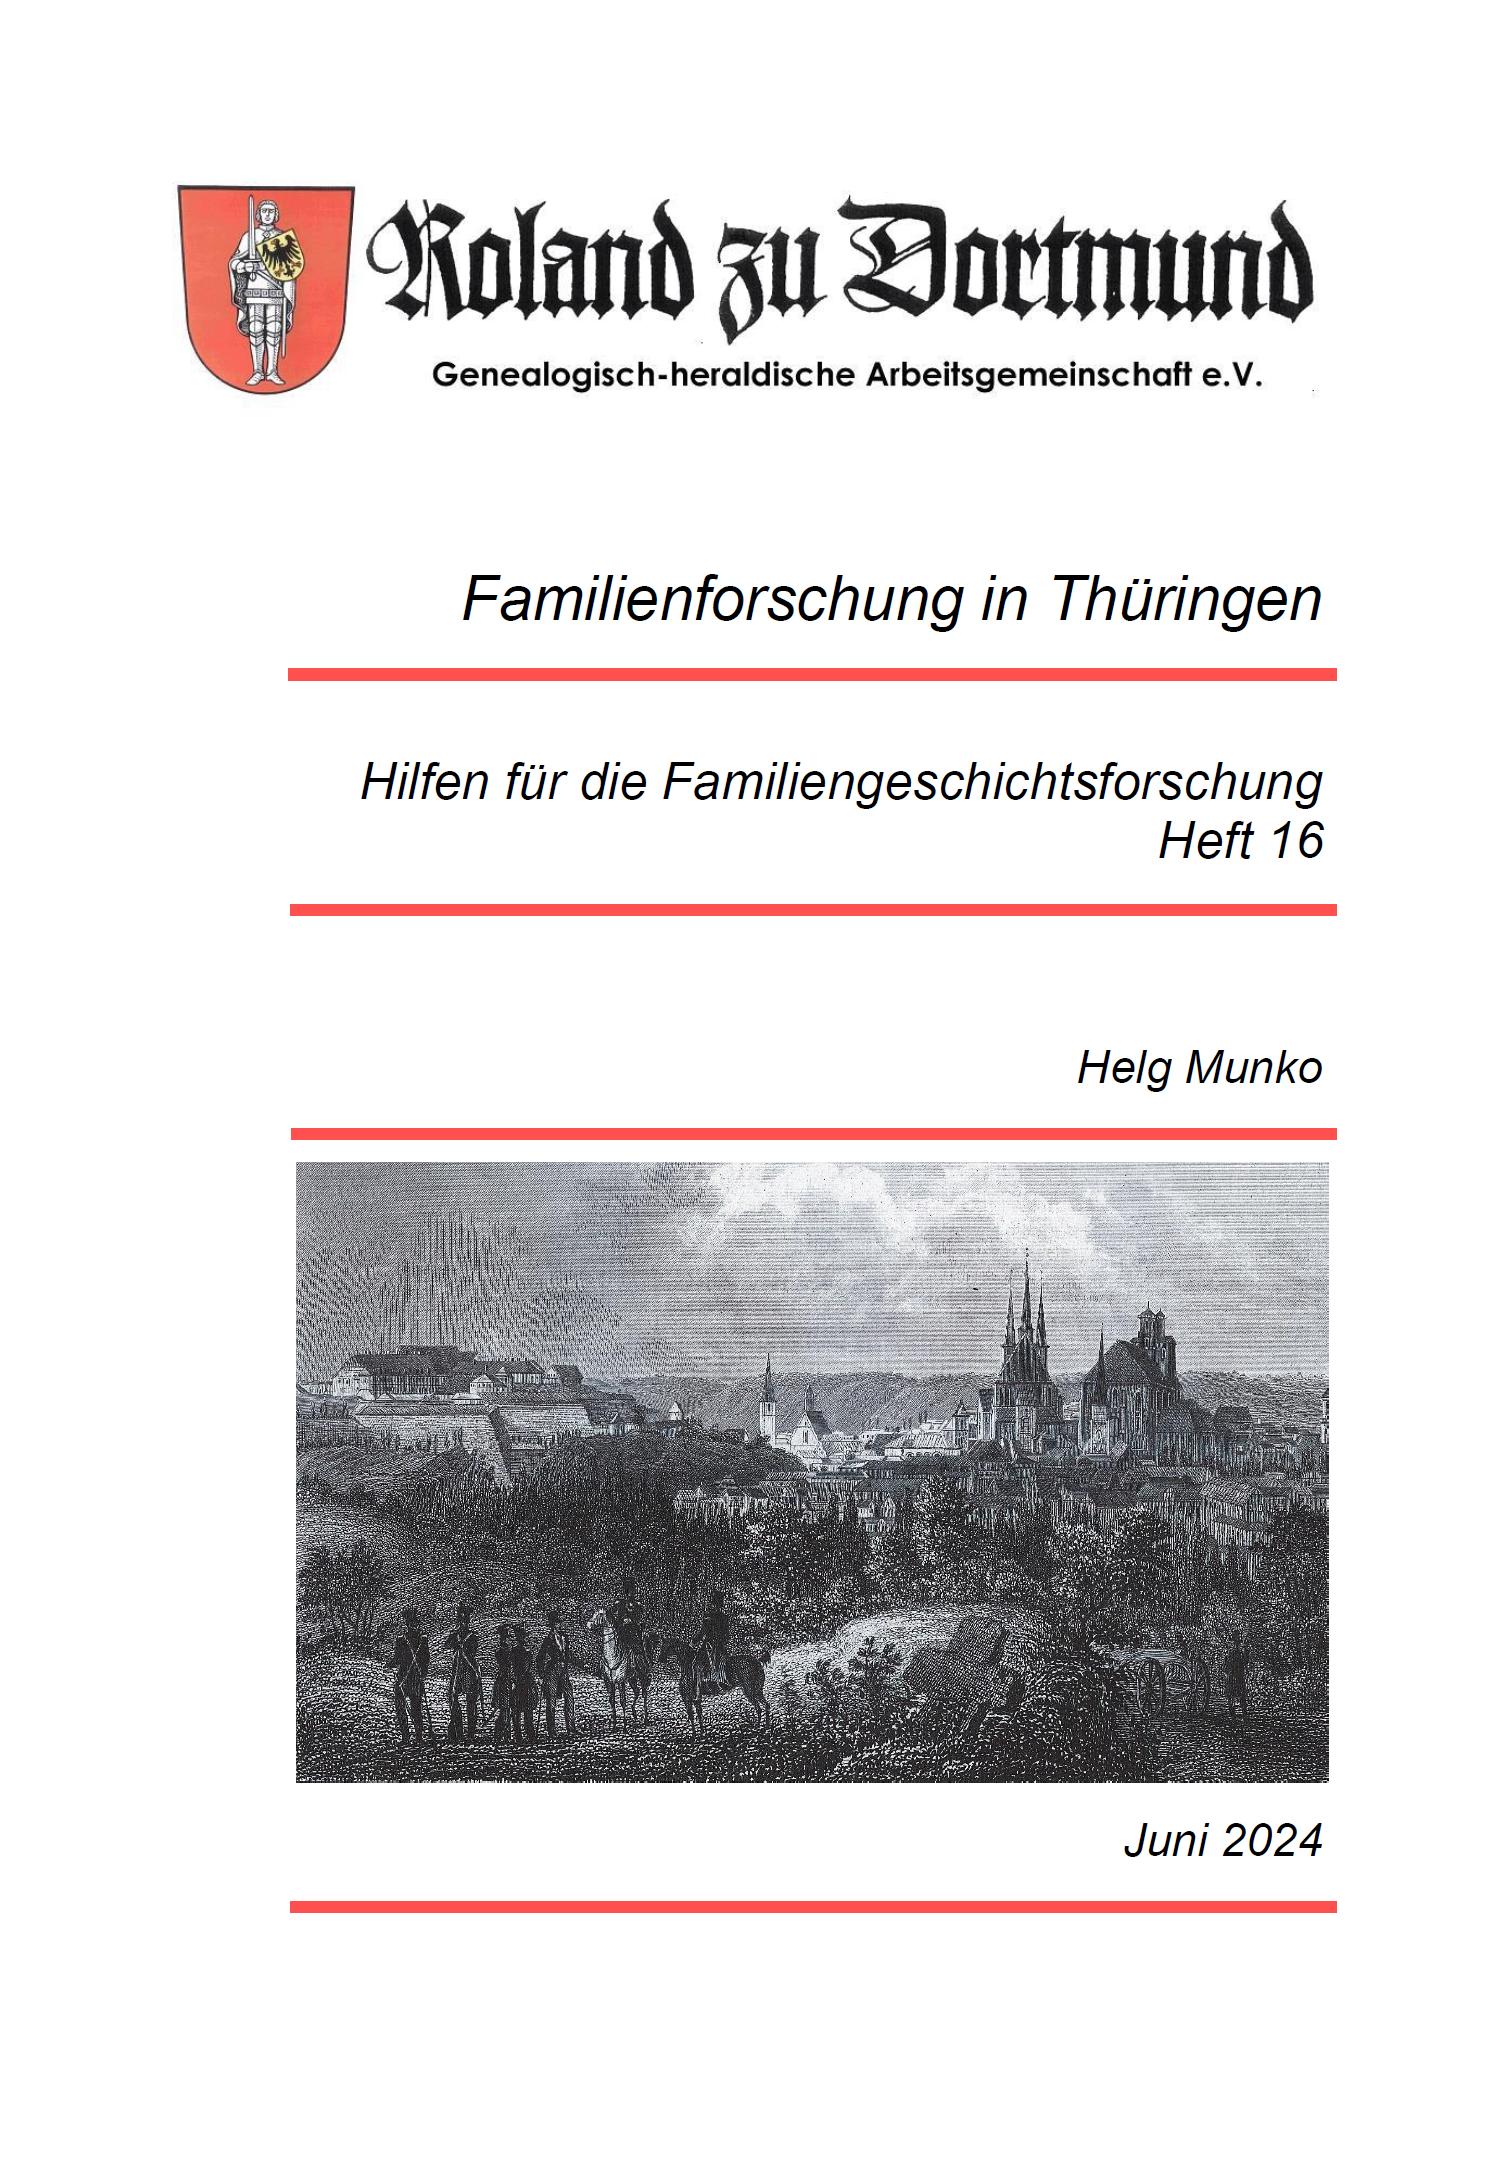 RzD-Forschungshilfen Heft 16 - Familienforschung in Thüringen